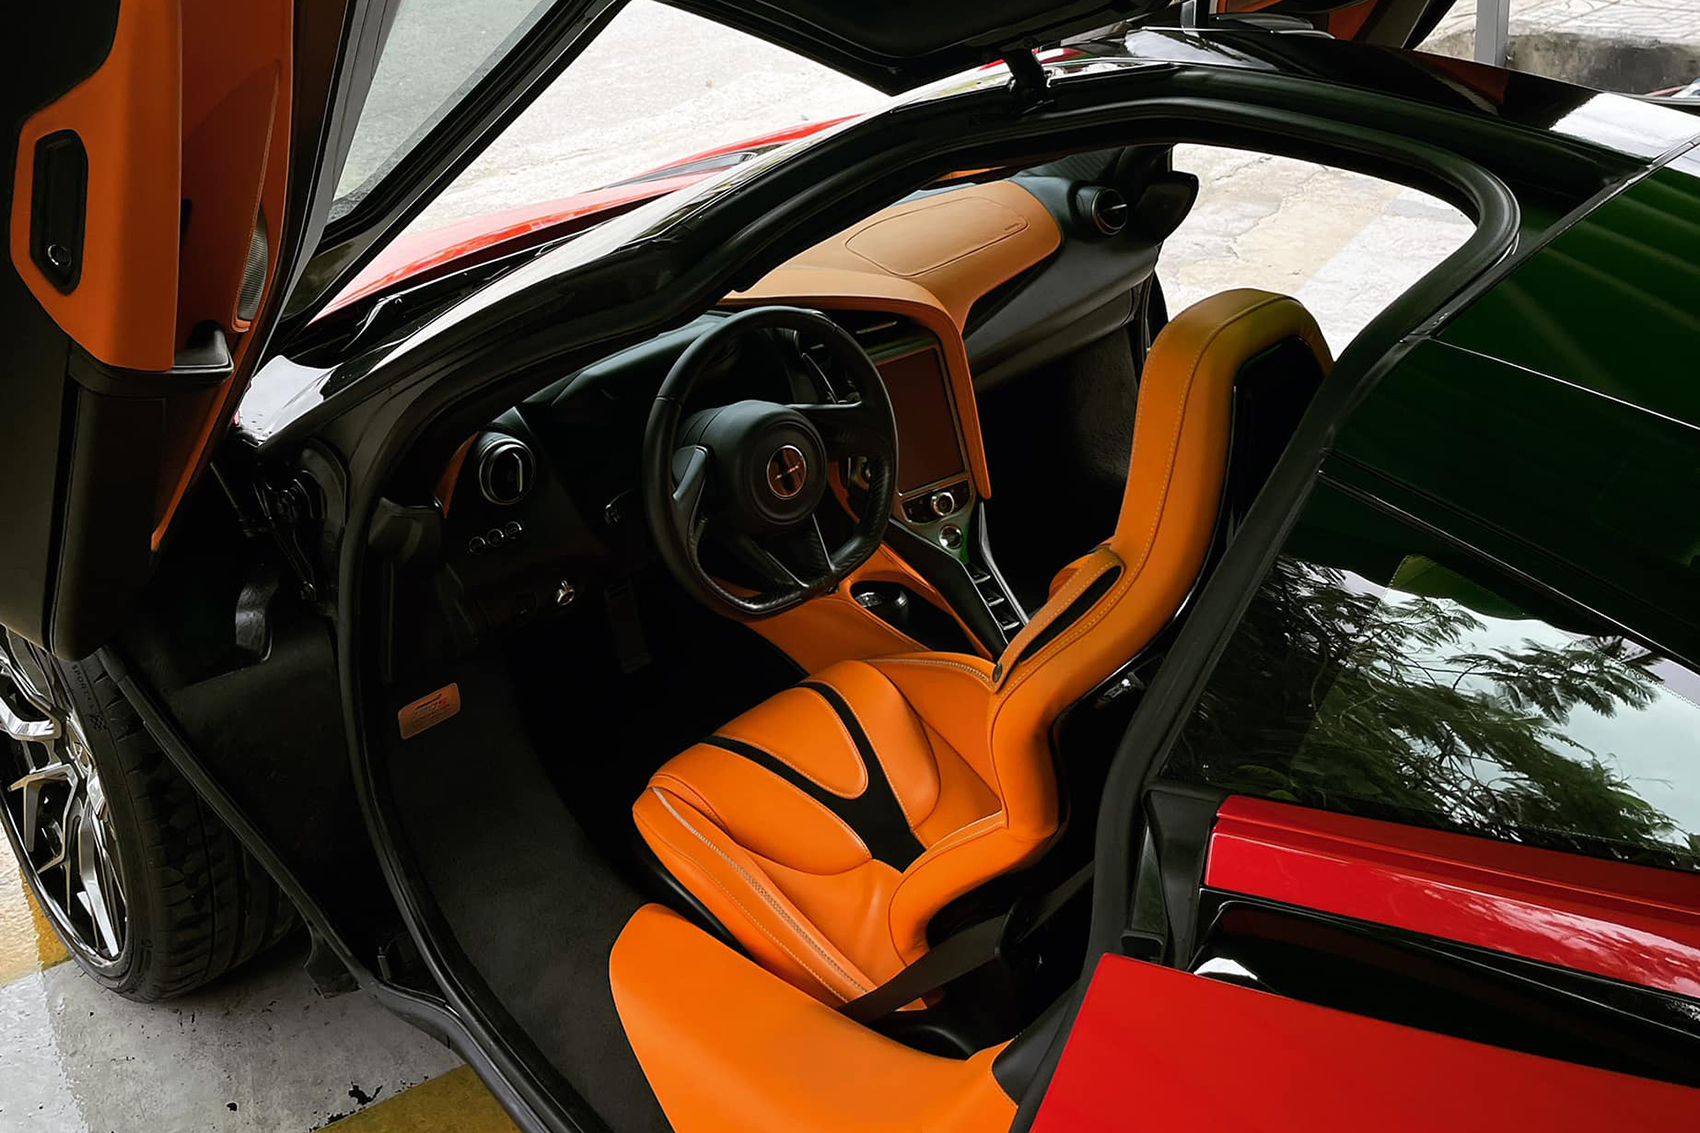 Độ nội thất McLaren 720S theo xu hướng Hermes
Kết hợp giữa thiết kế tối giản và tinh tế của McLaren 720S cùng với sự sang trọng của thương hiệu Hermes, chắc chắn chiếc supercar của bạn sẽ trở nên độc đáo và có phong cách thật sự của riêng mình.